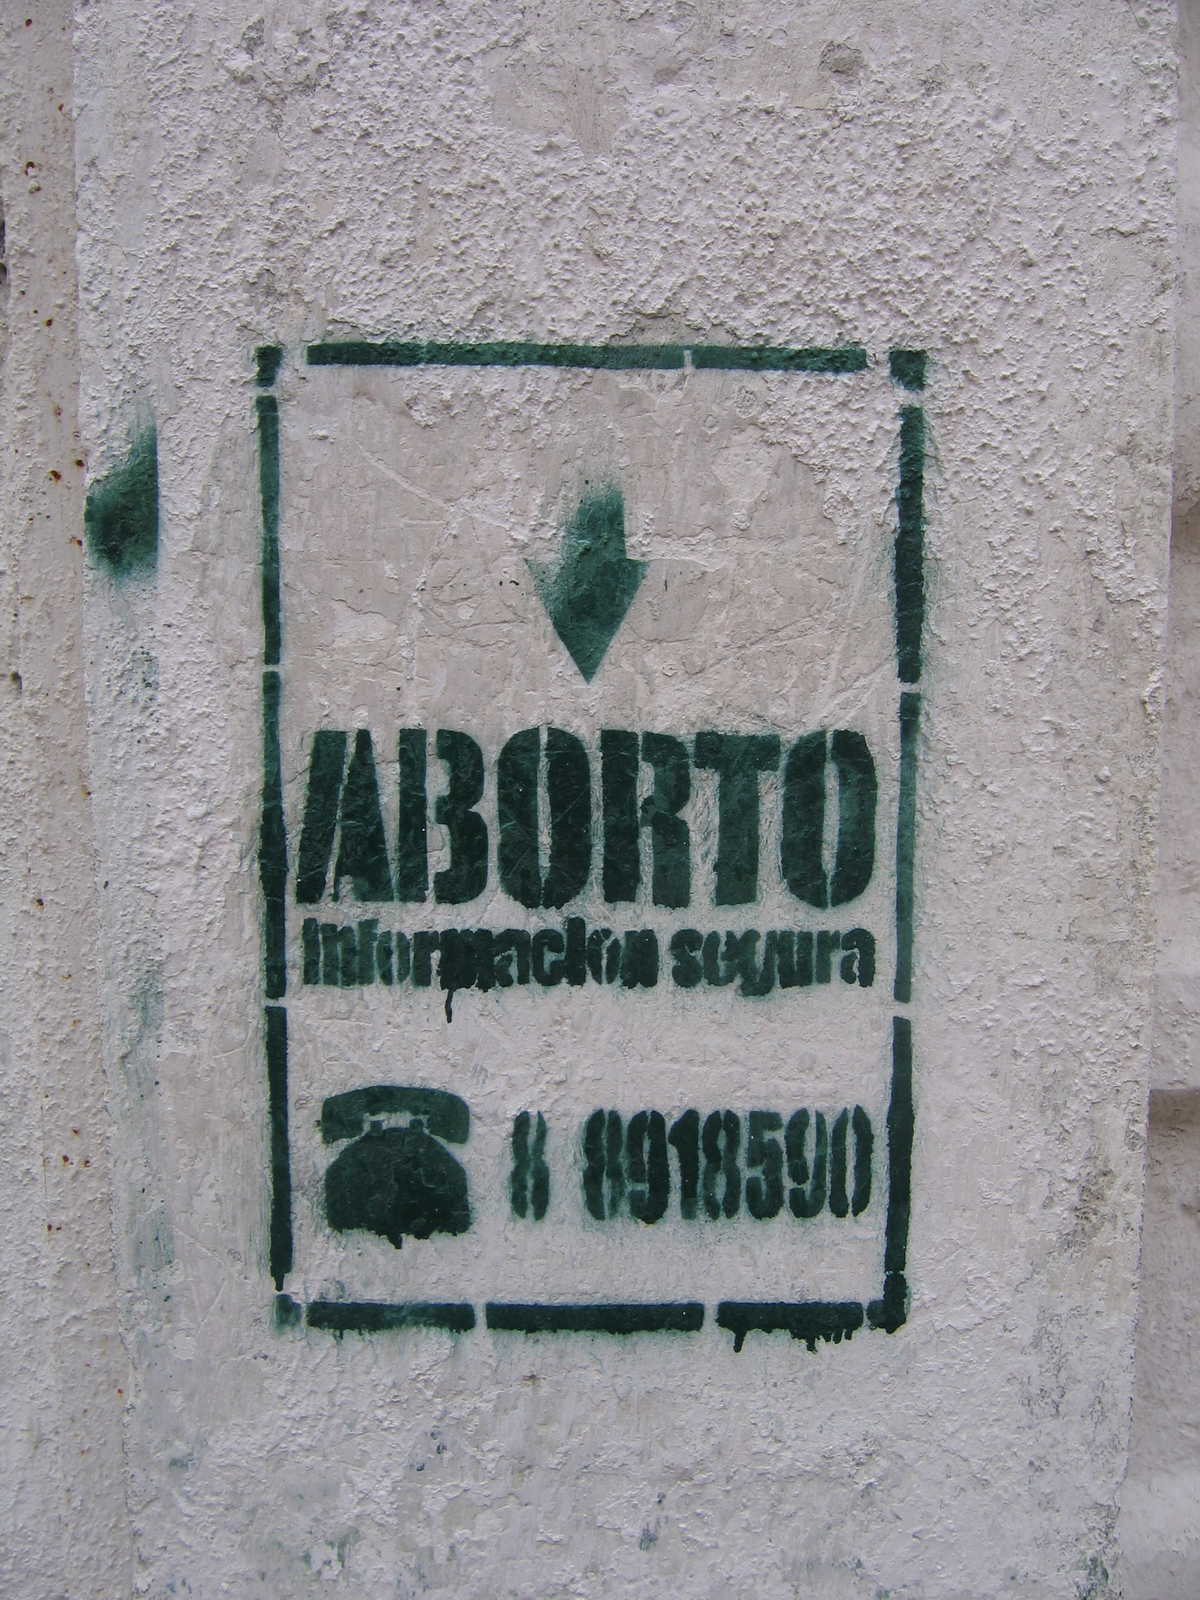 Safe abortion hotline stencil